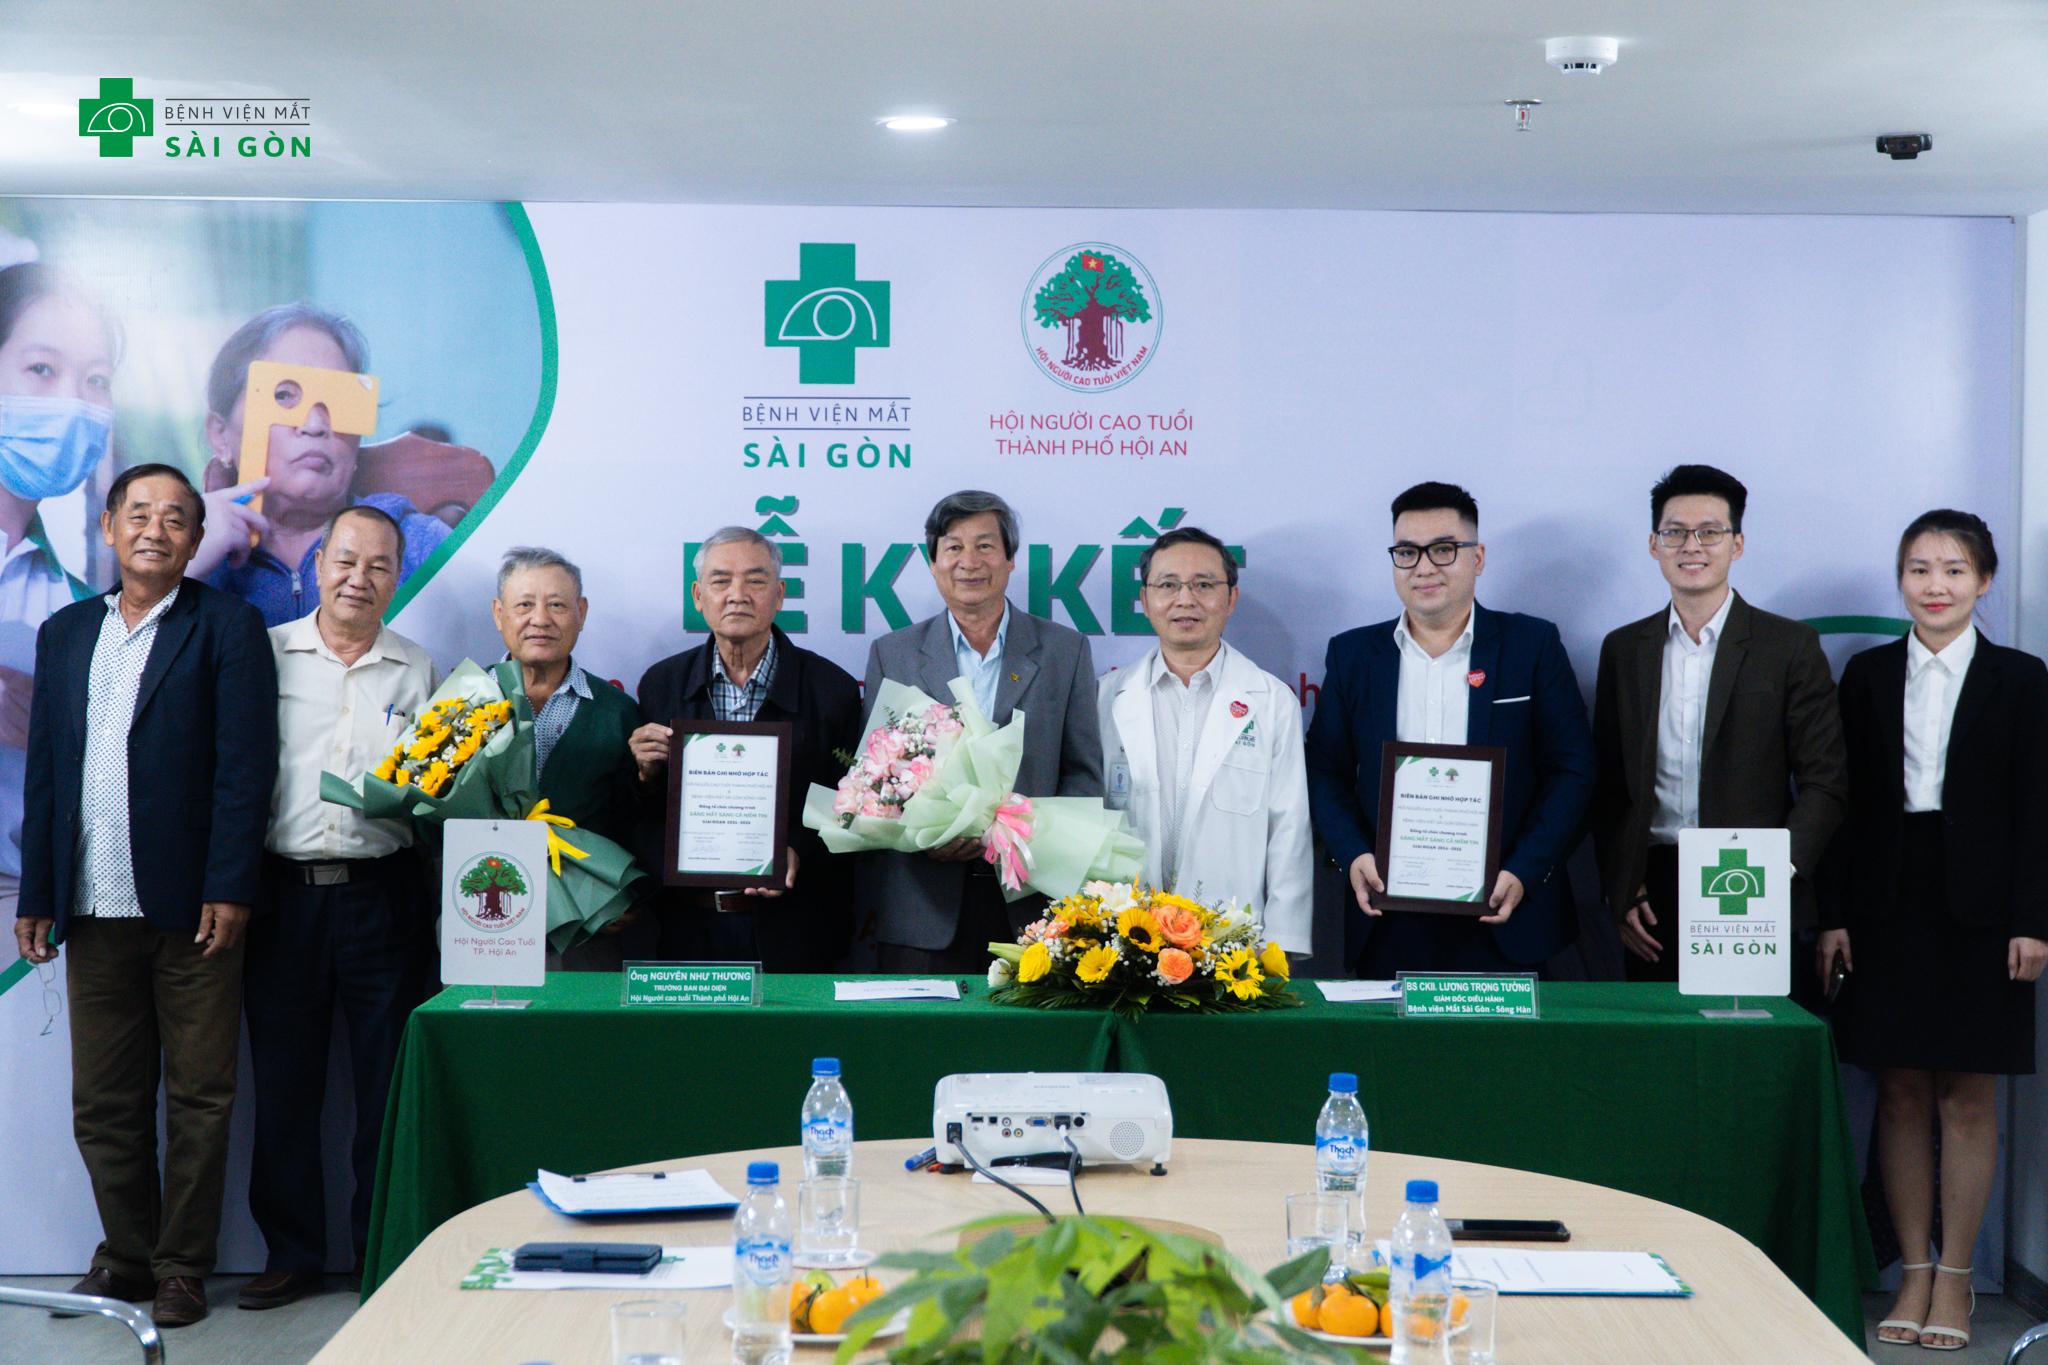 Bệnh viện Mắt Sài Gòn Sông Hàn thực hiện ký kết hợp tác với hội người cao tuổi thành phố Hội An